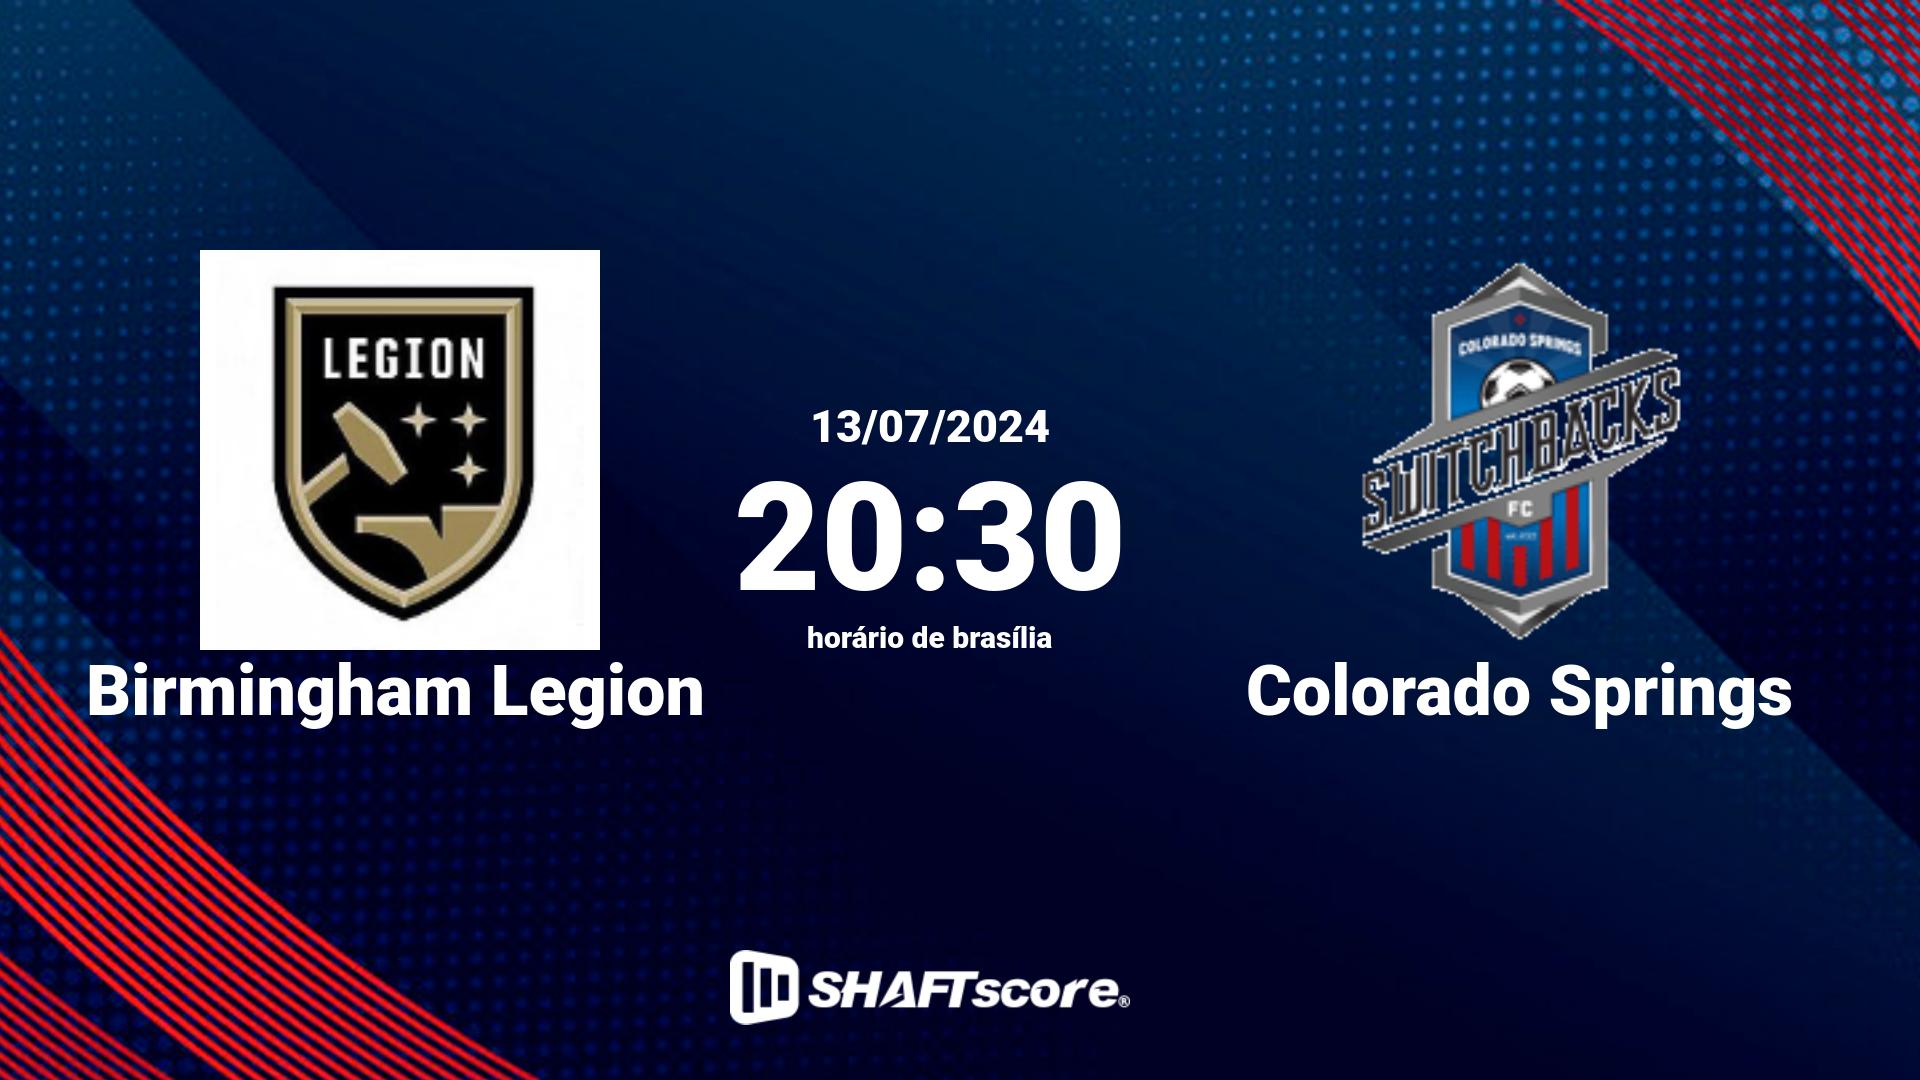 Estatísticas do jogo Birmingham Legion vs Colorado Springs 13.07 20:30